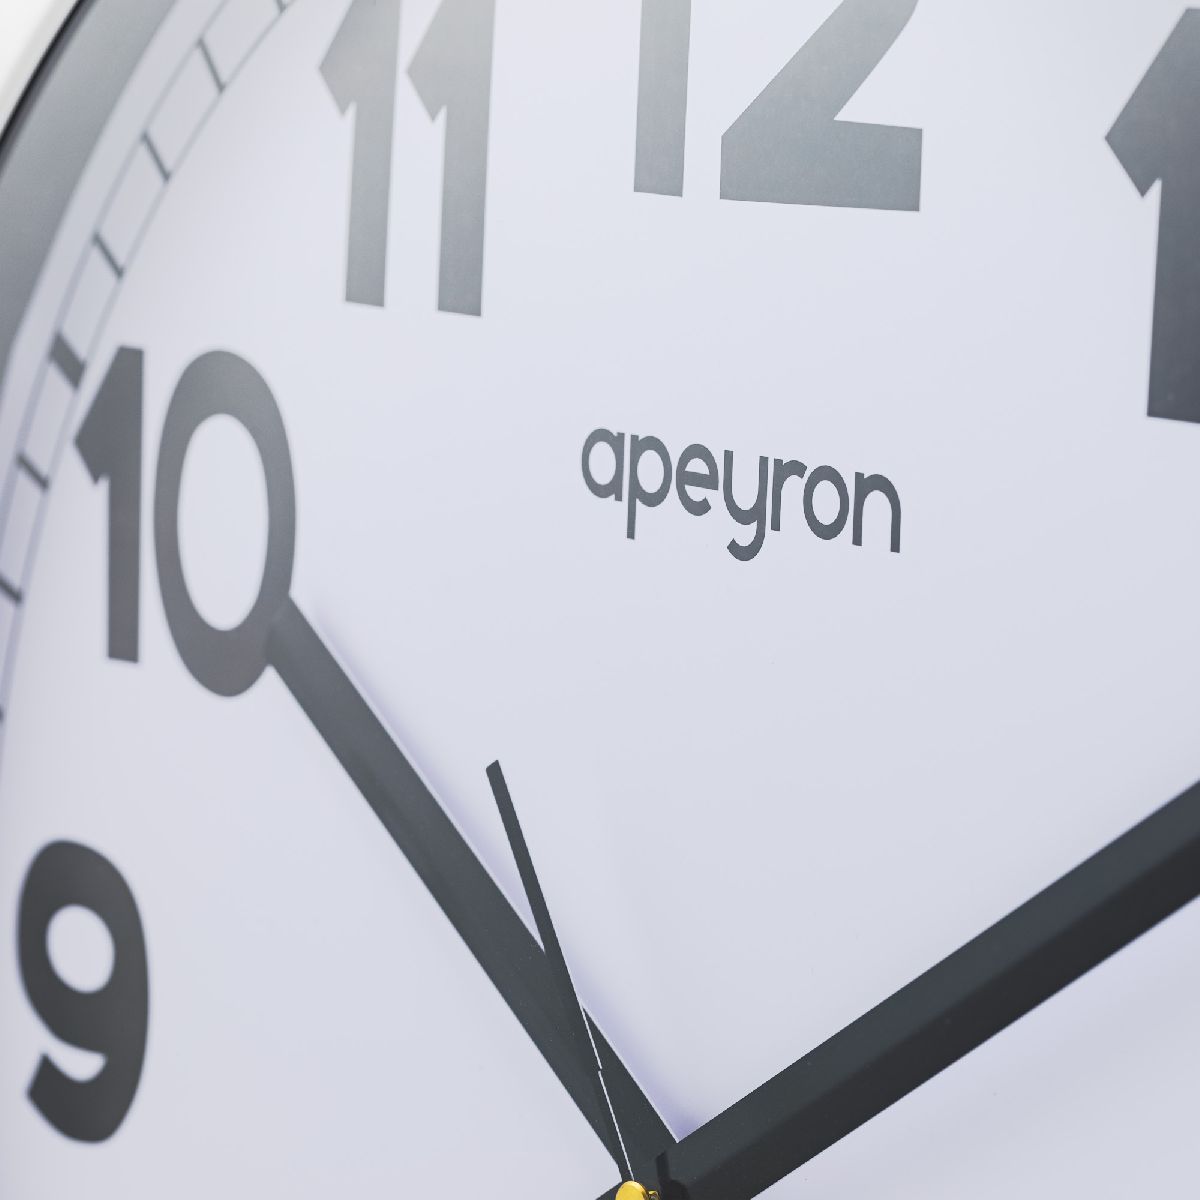 Часы настенные Apeyron ML220621